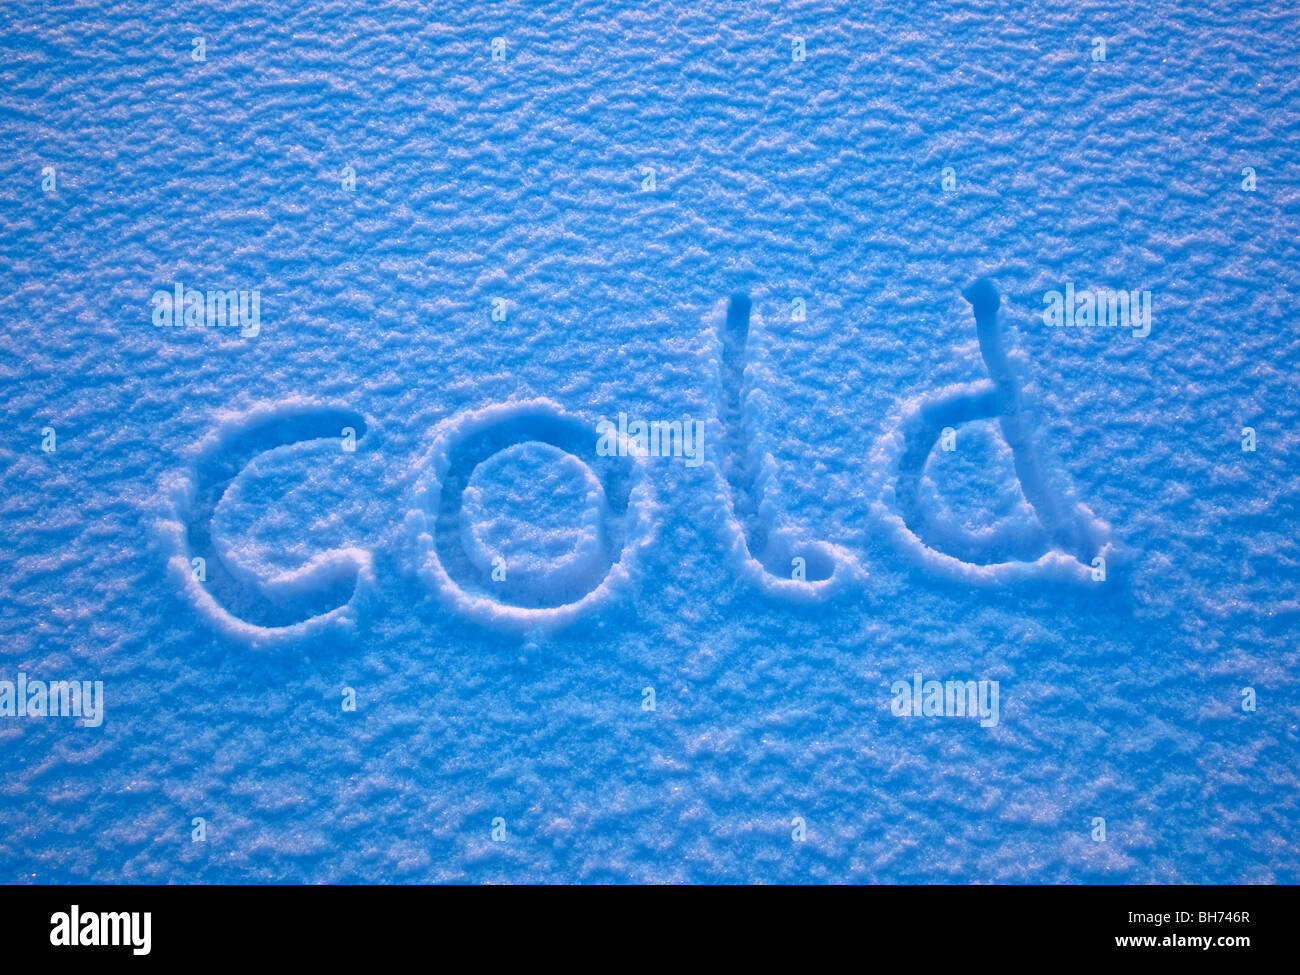 La parola "cold" enunciato nella neve. Foto Stock